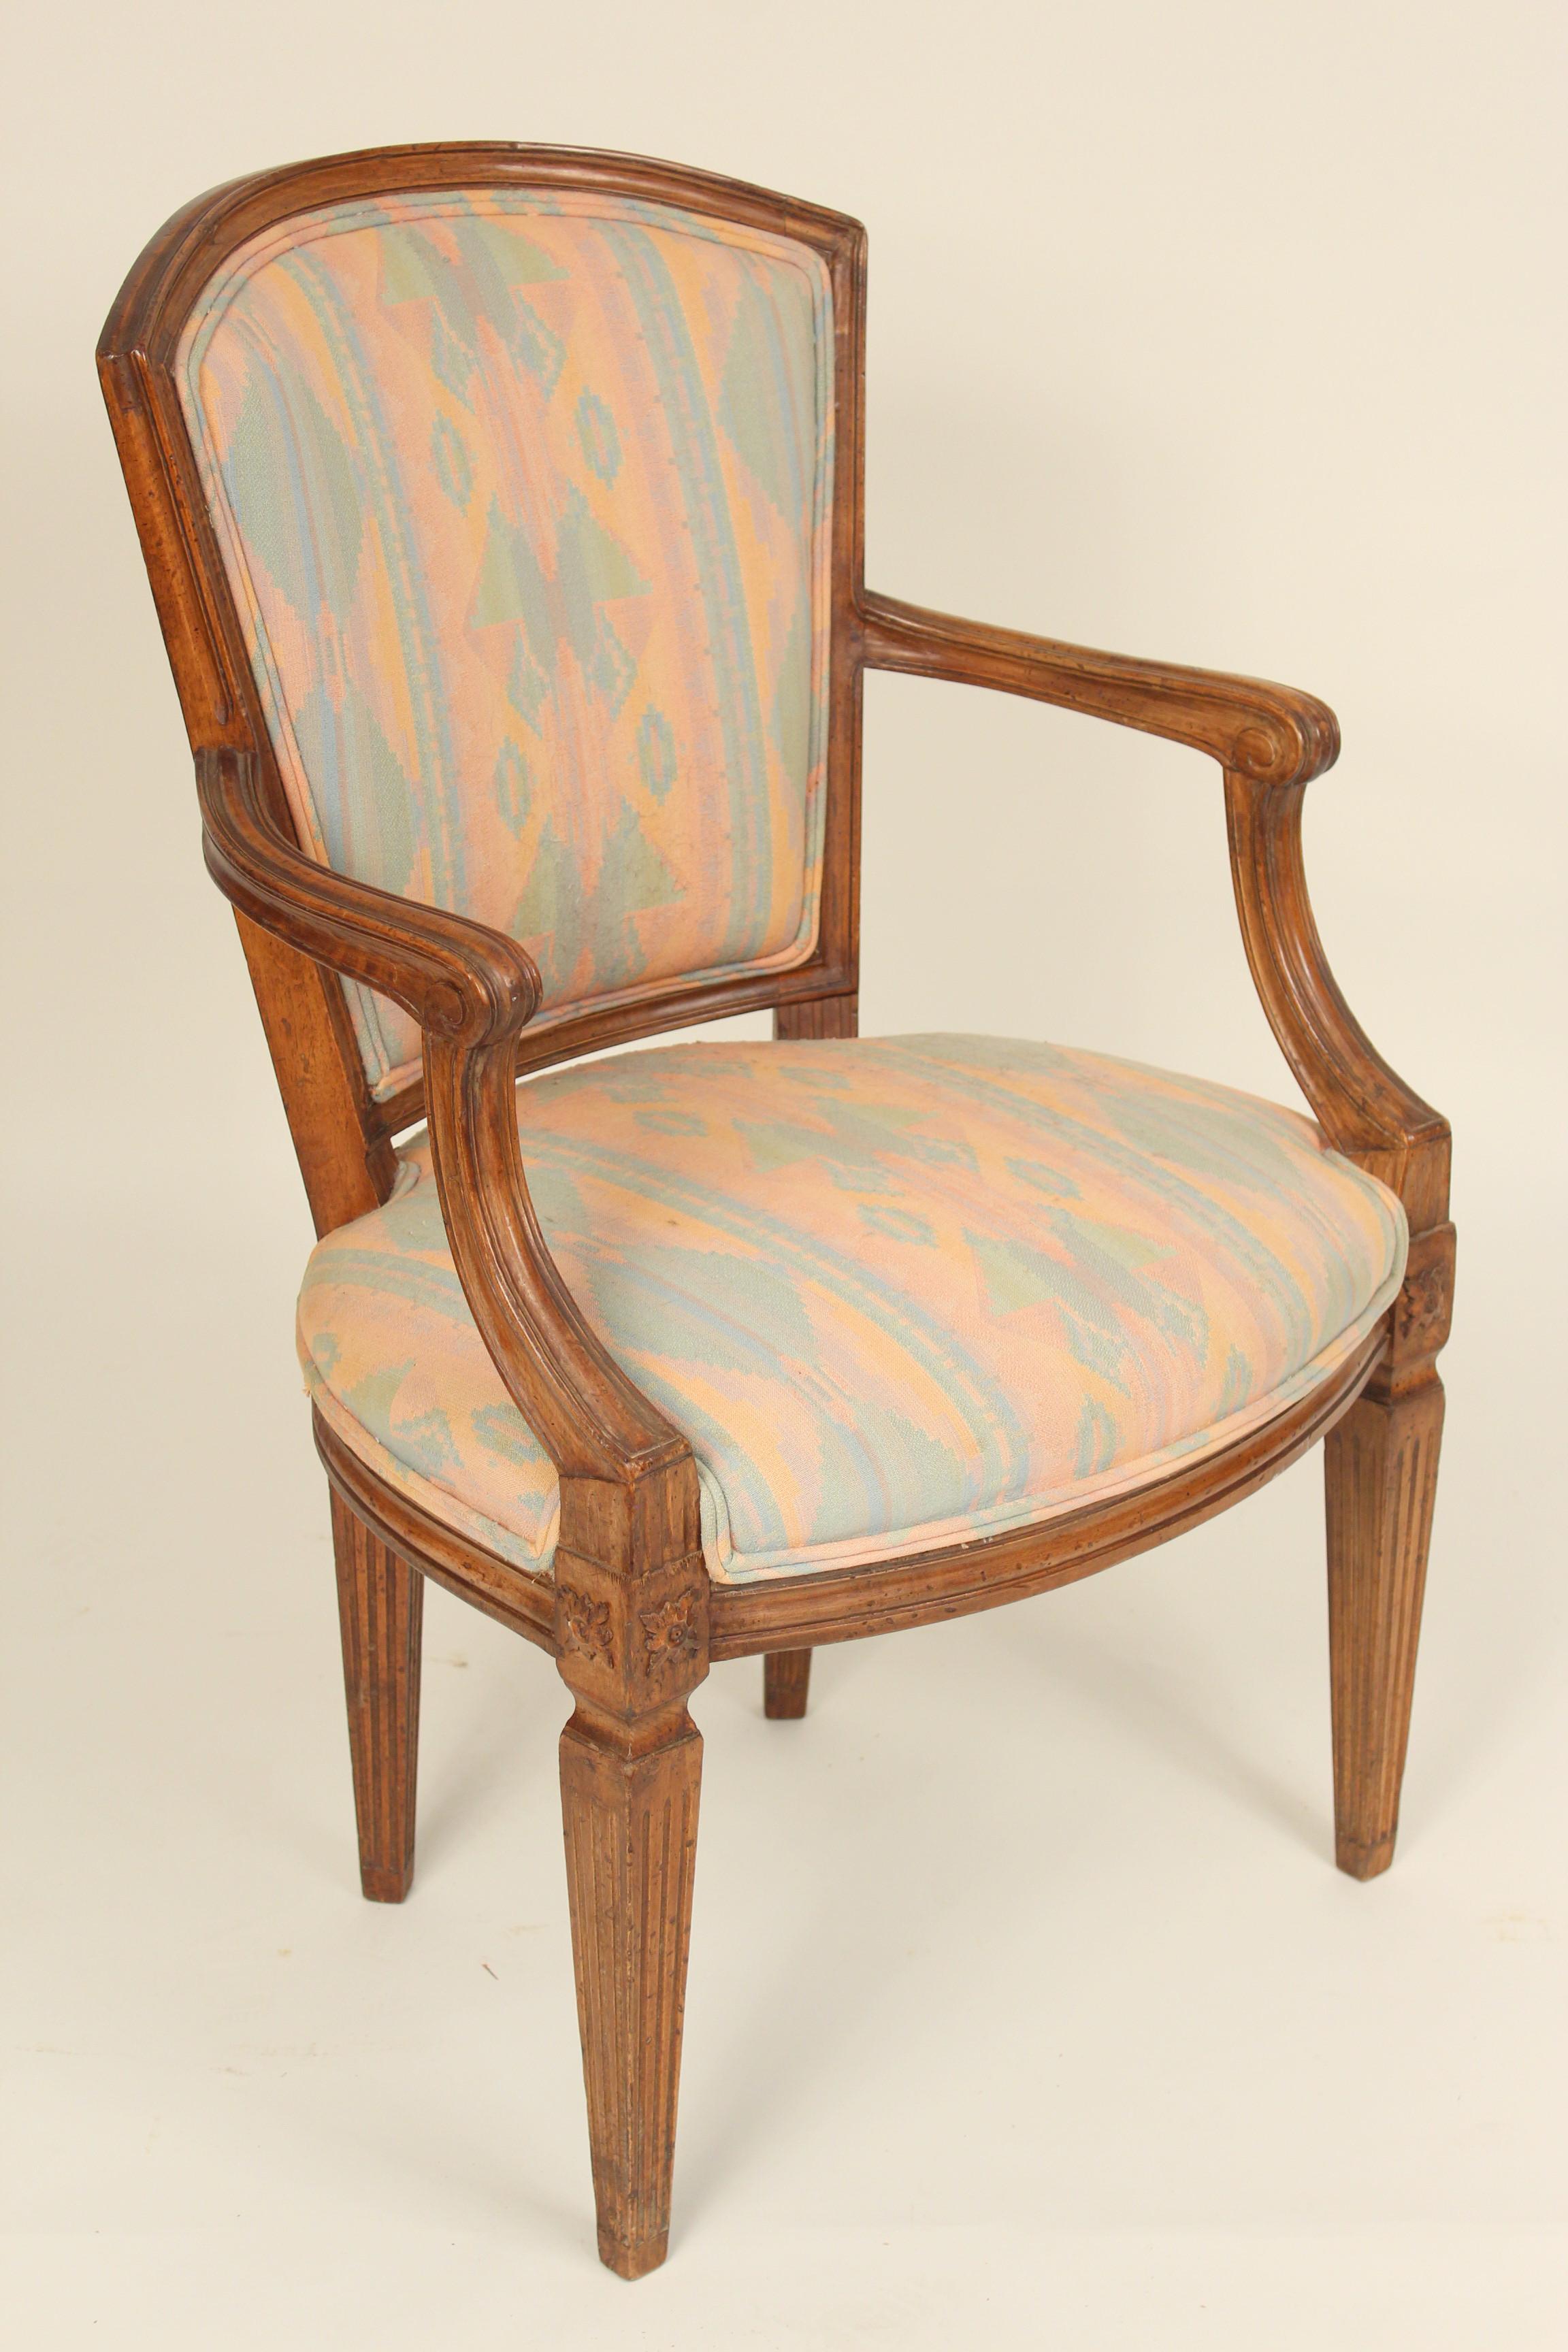 Paire de fauteuils italiens de style Louis XVI en hêtre et noyer, vers les années 1970. La finition et le rembourrage sont de bonne qualité.